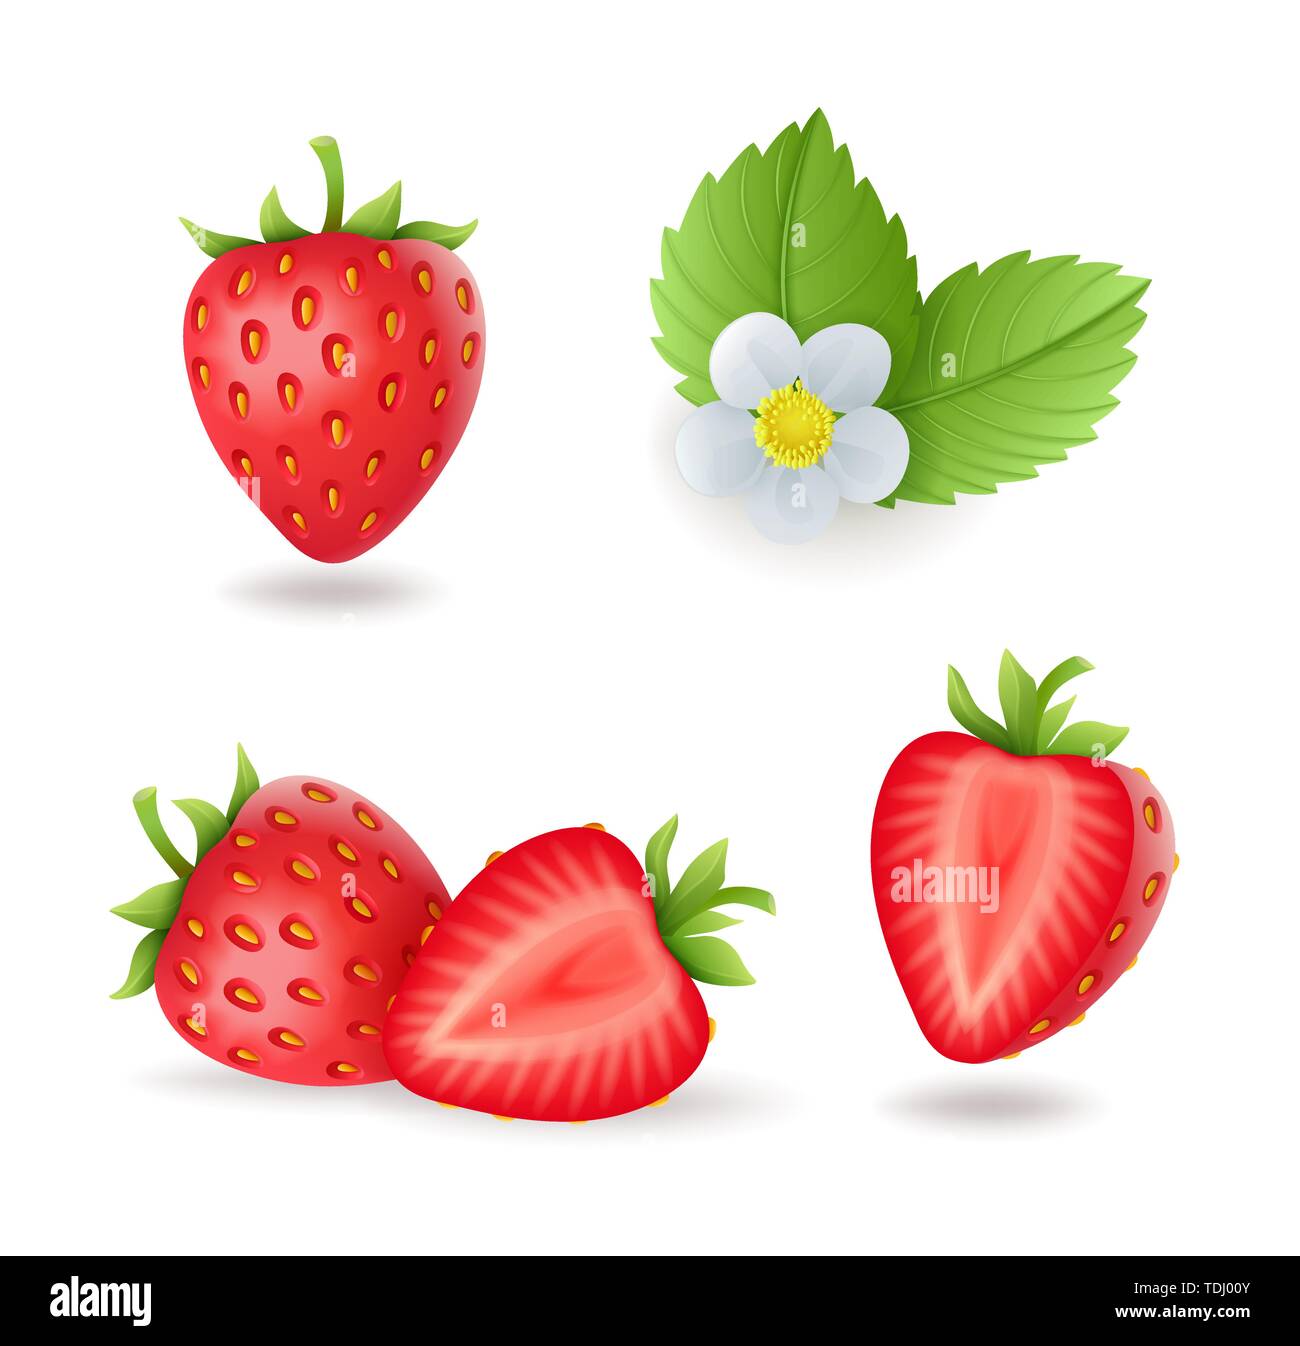 Jeu de fraises sucrées réaliste avec des feuilles et fleurs, petits fruits rouges frais, isolé sur fond blanc vector illustration. Illustration de Vecteur